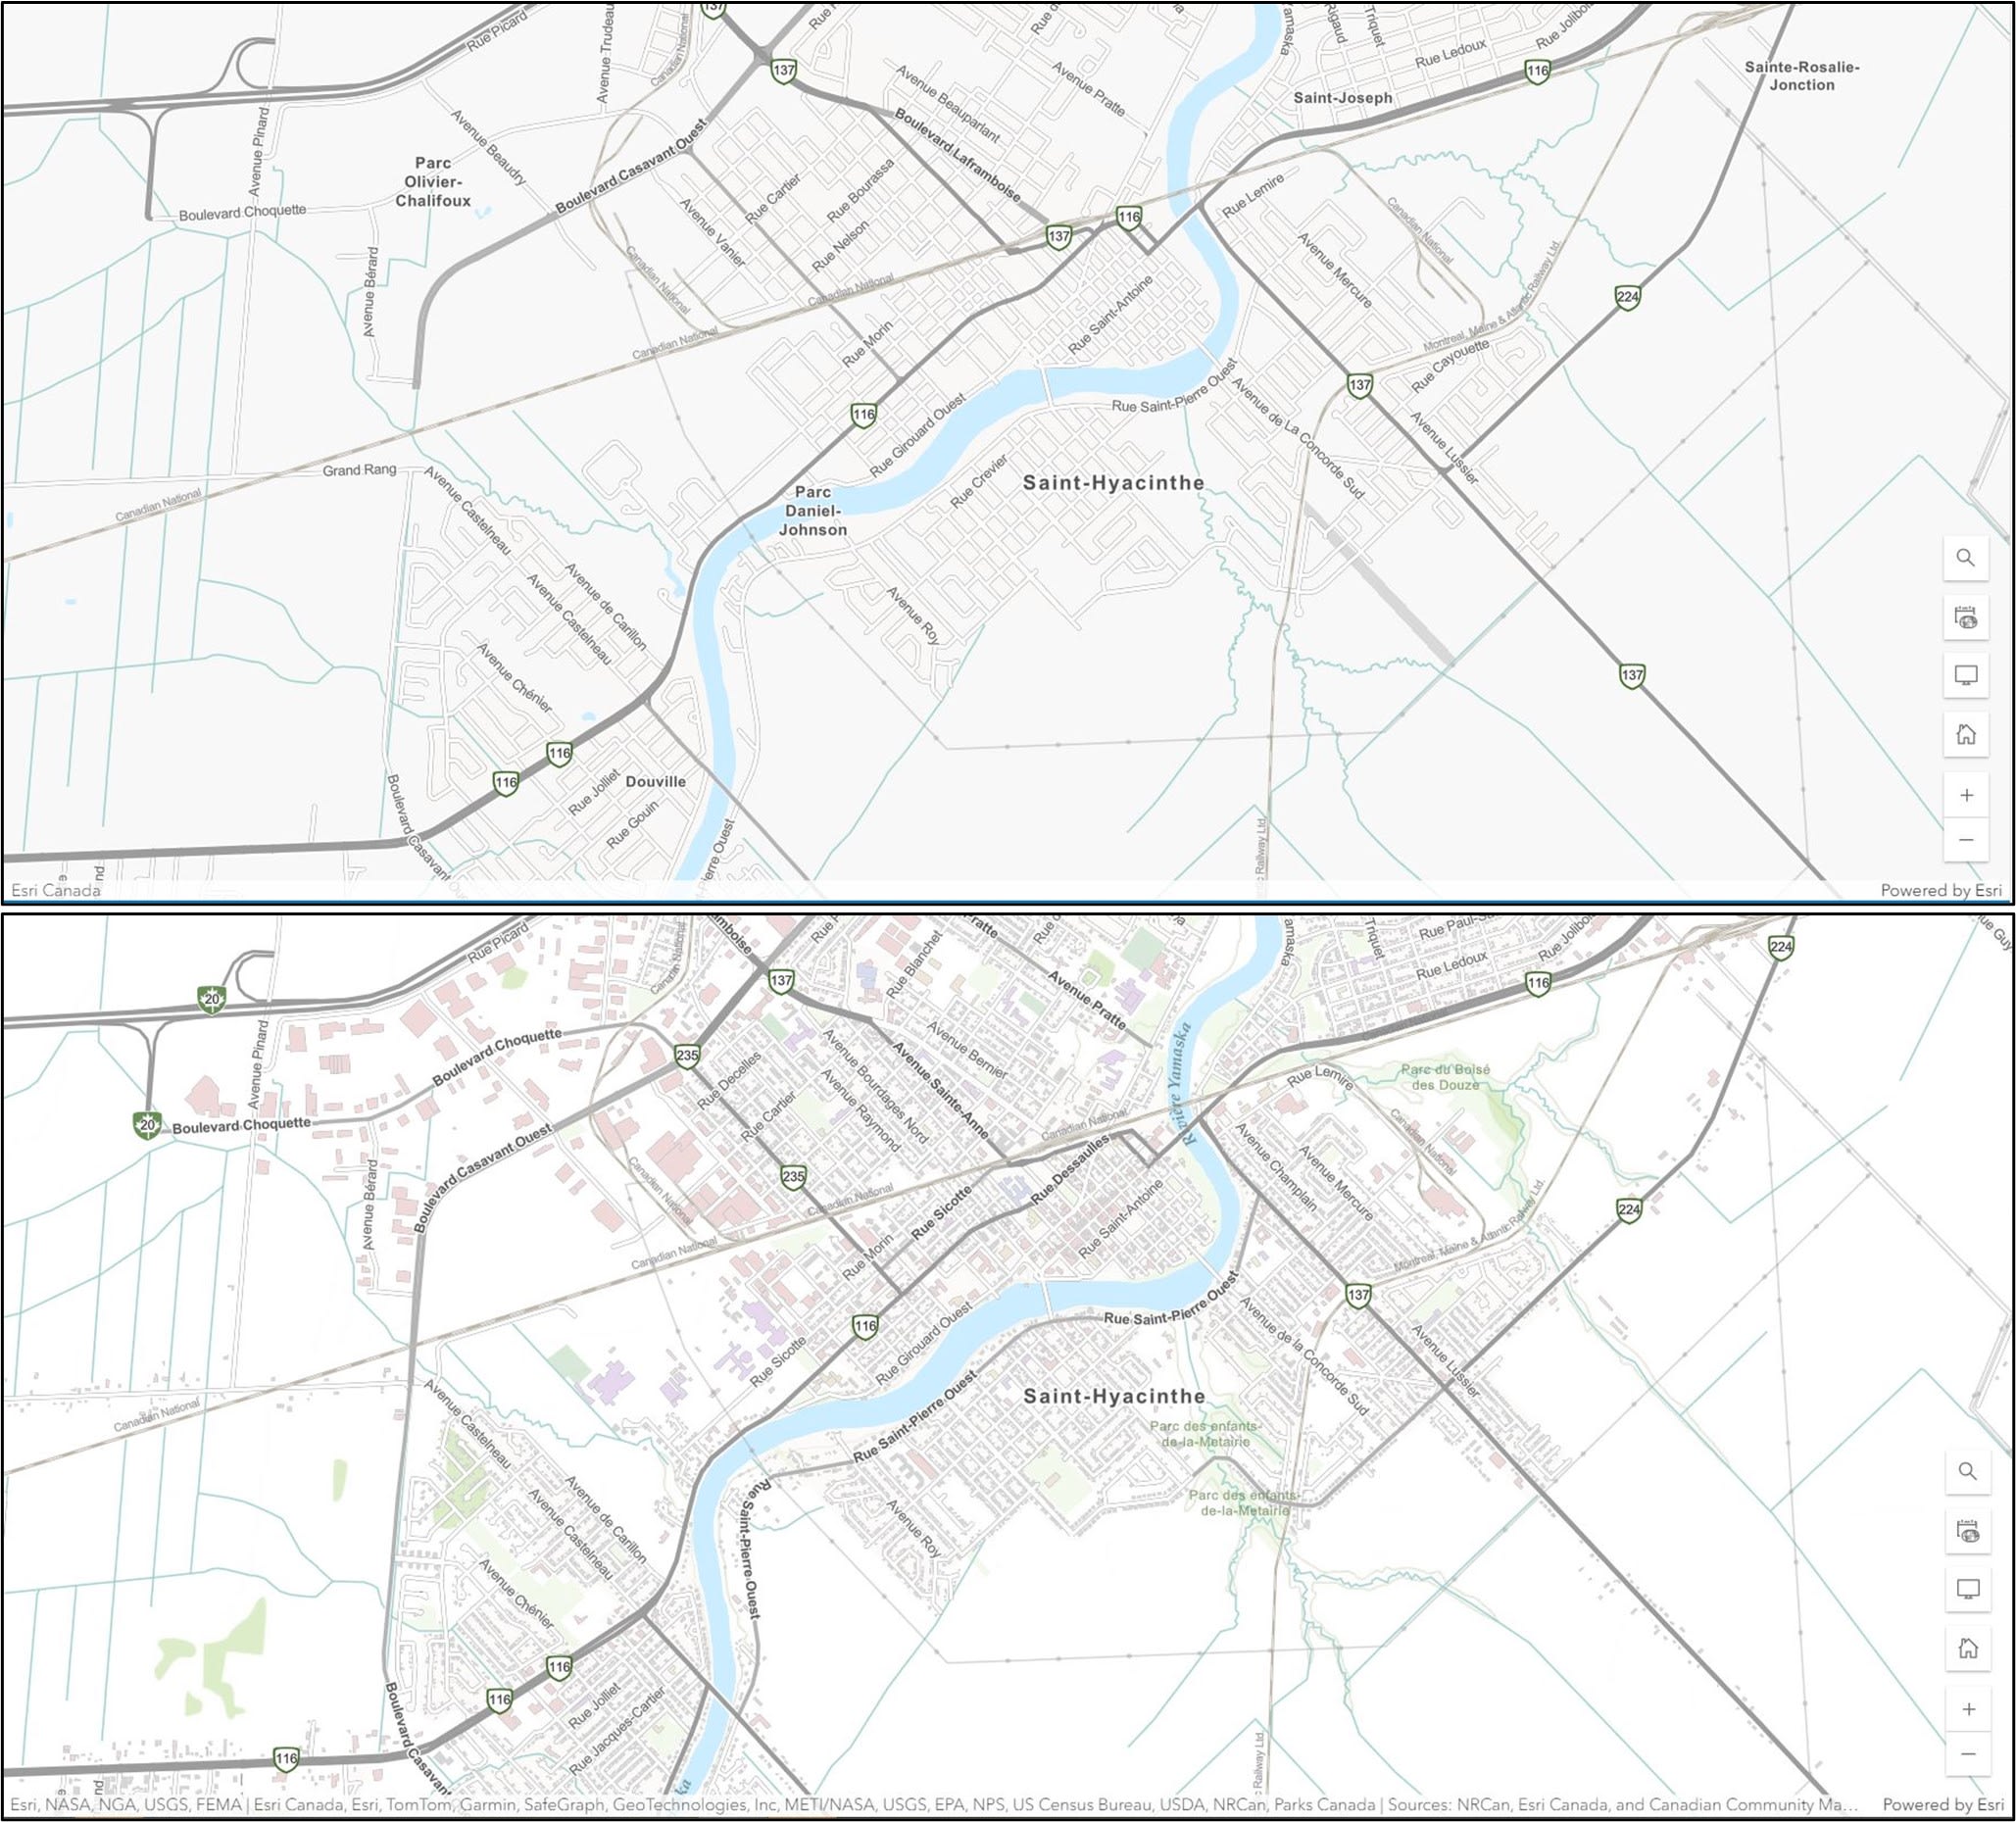 Images comparant deux cartes topographiques pour un même endroit (la ville de Saint-Hyacinthe, Québec) et montrant que des données ont été ajoutées à celle du bas. L’image du haut montre la carte plus vide que l’image du bas, qui comprend des contours de bâtiment et des données sur les parcs.